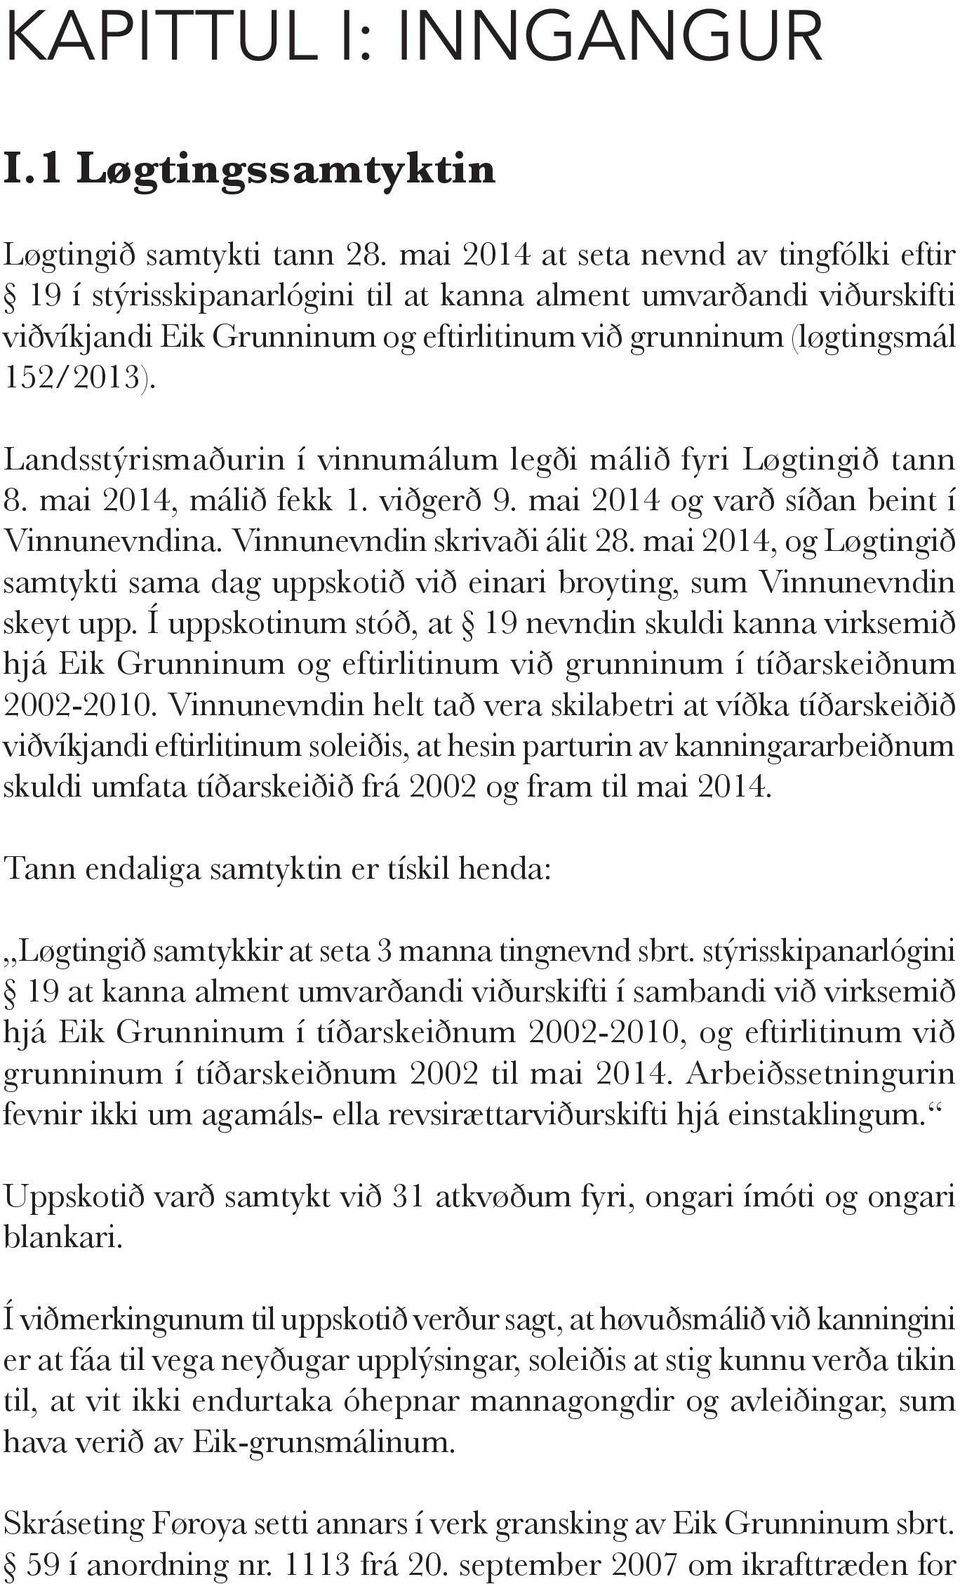 Landsstýrismaðurin í vinnumálum legði málið fyri Løgtingið tann 8. mai 2014, málið fekk 1. viðgerð 9. mai 2014 og varð síðan beint í Vinnu nevndina. Vinnunevndin skrivaði álit 28.